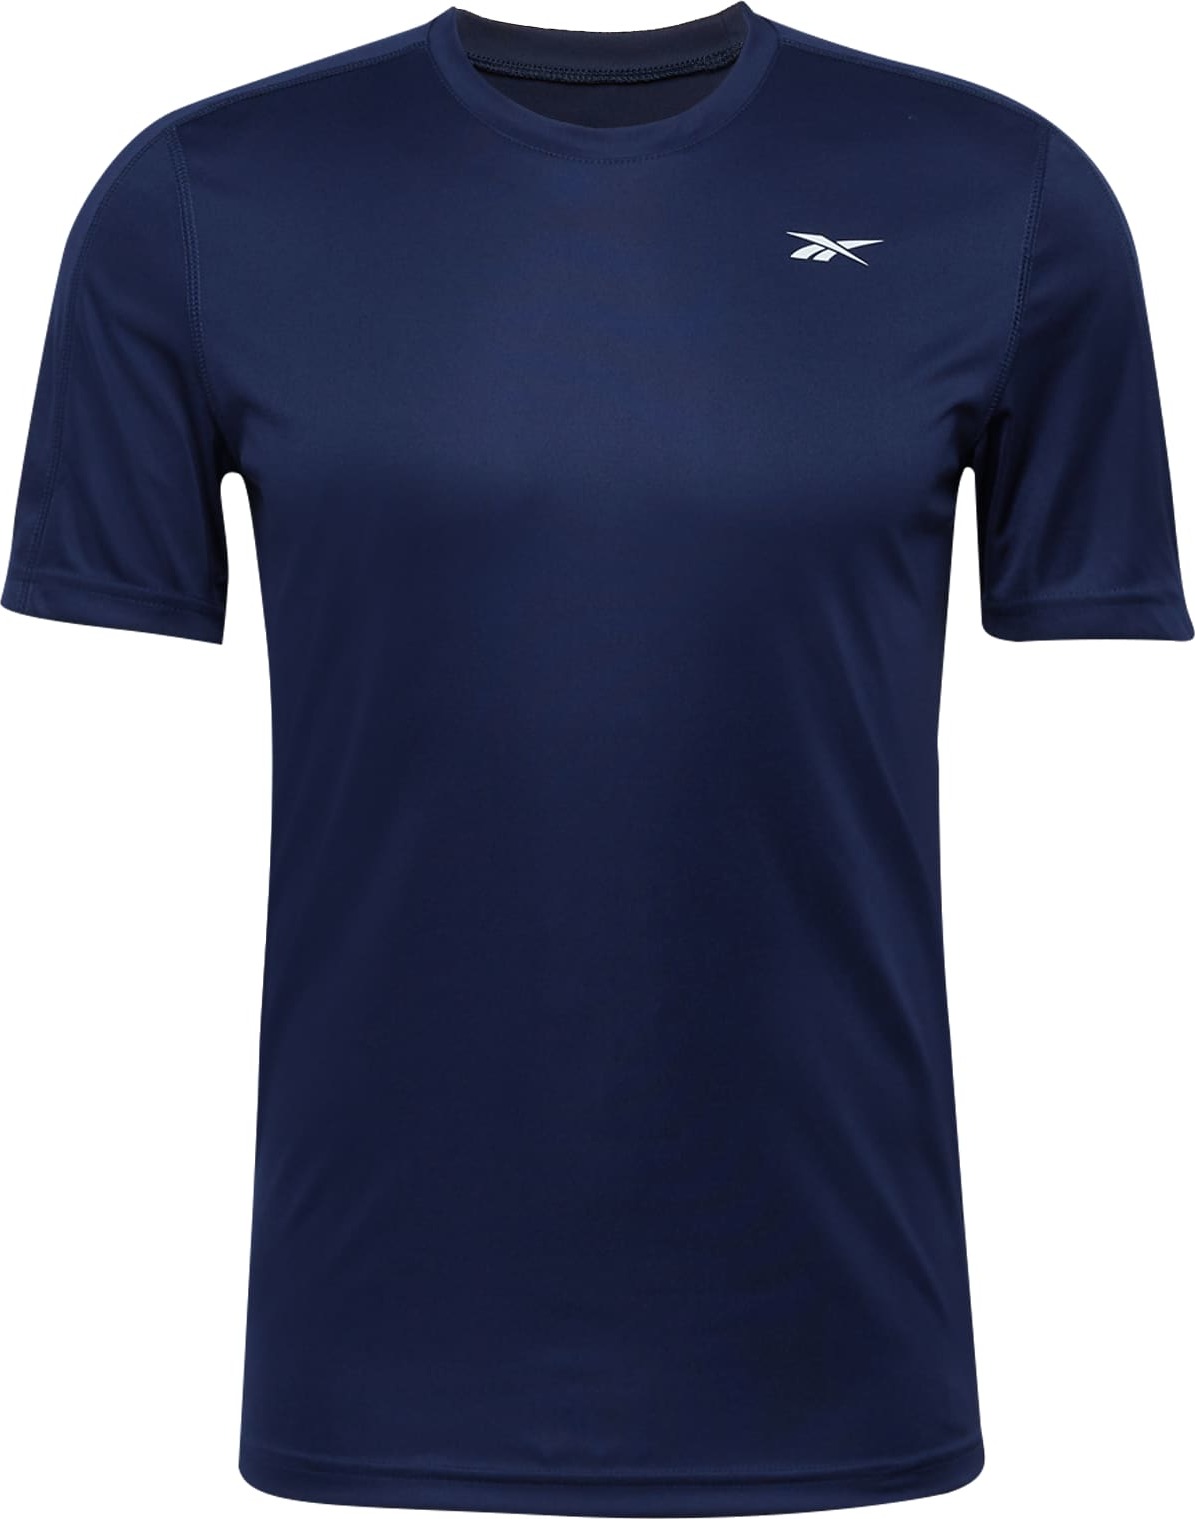 Reebok Sport Funkční tričko tmavě modrá / bílá